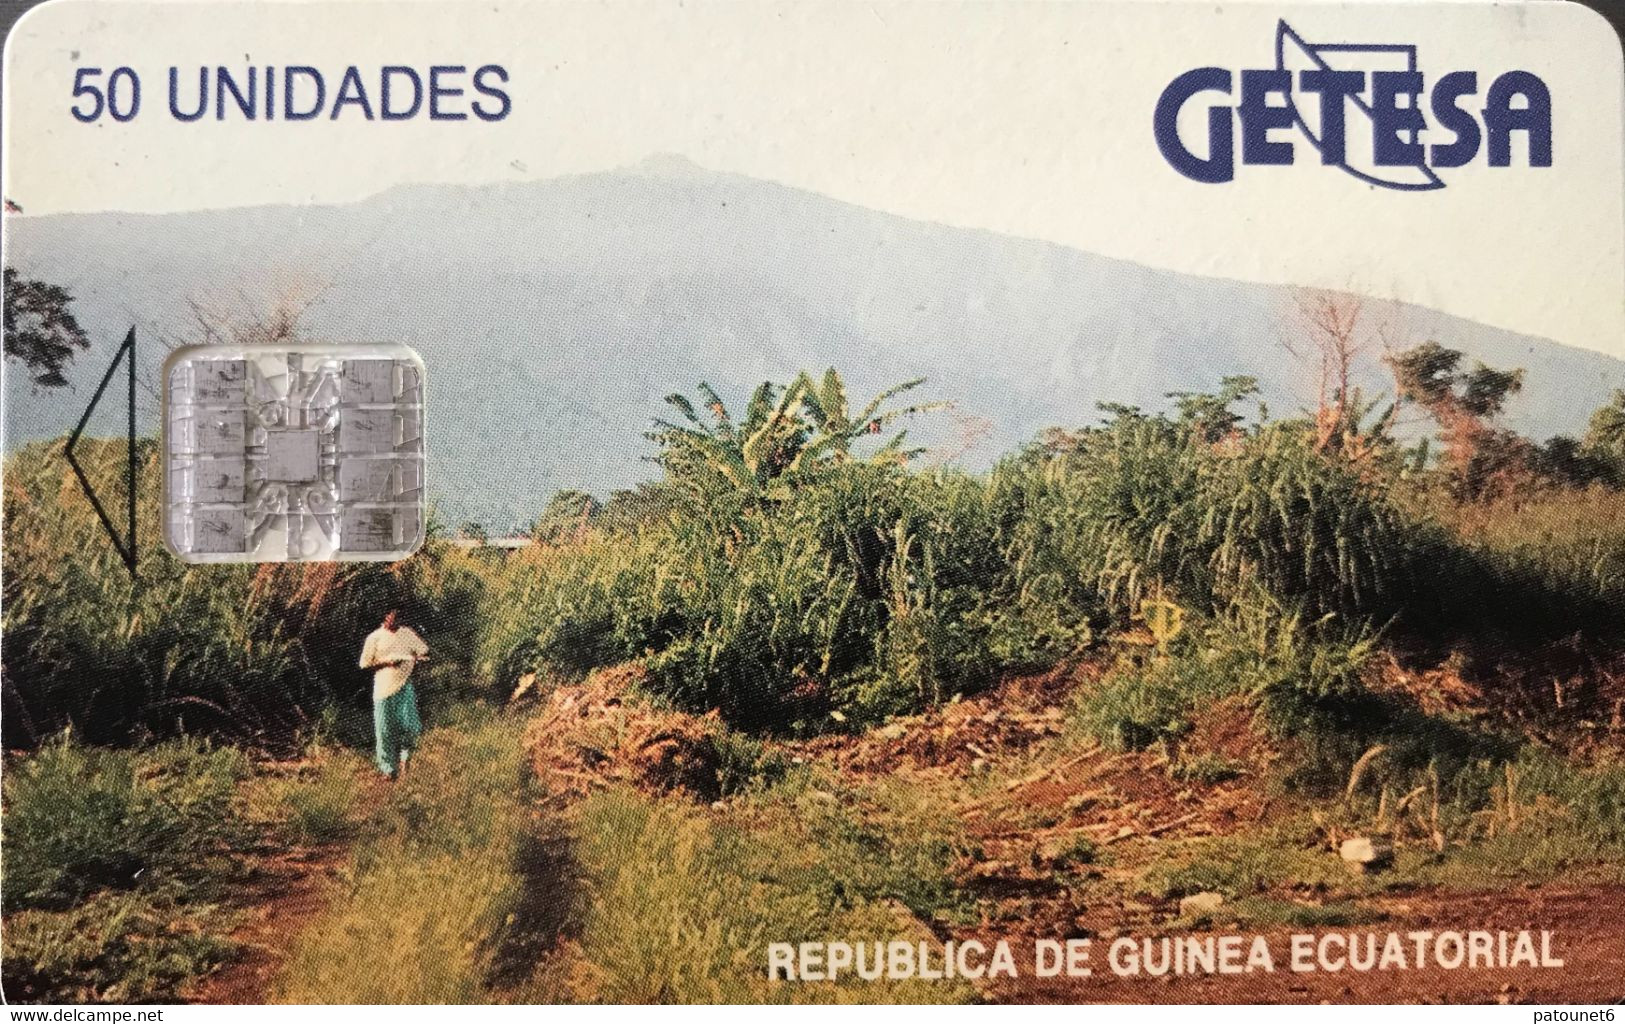 GUINEE-EQUATORIALE  -  Phonecard  -  GETESA - SC7 -  50 Unidades - Guinea Equatoriale